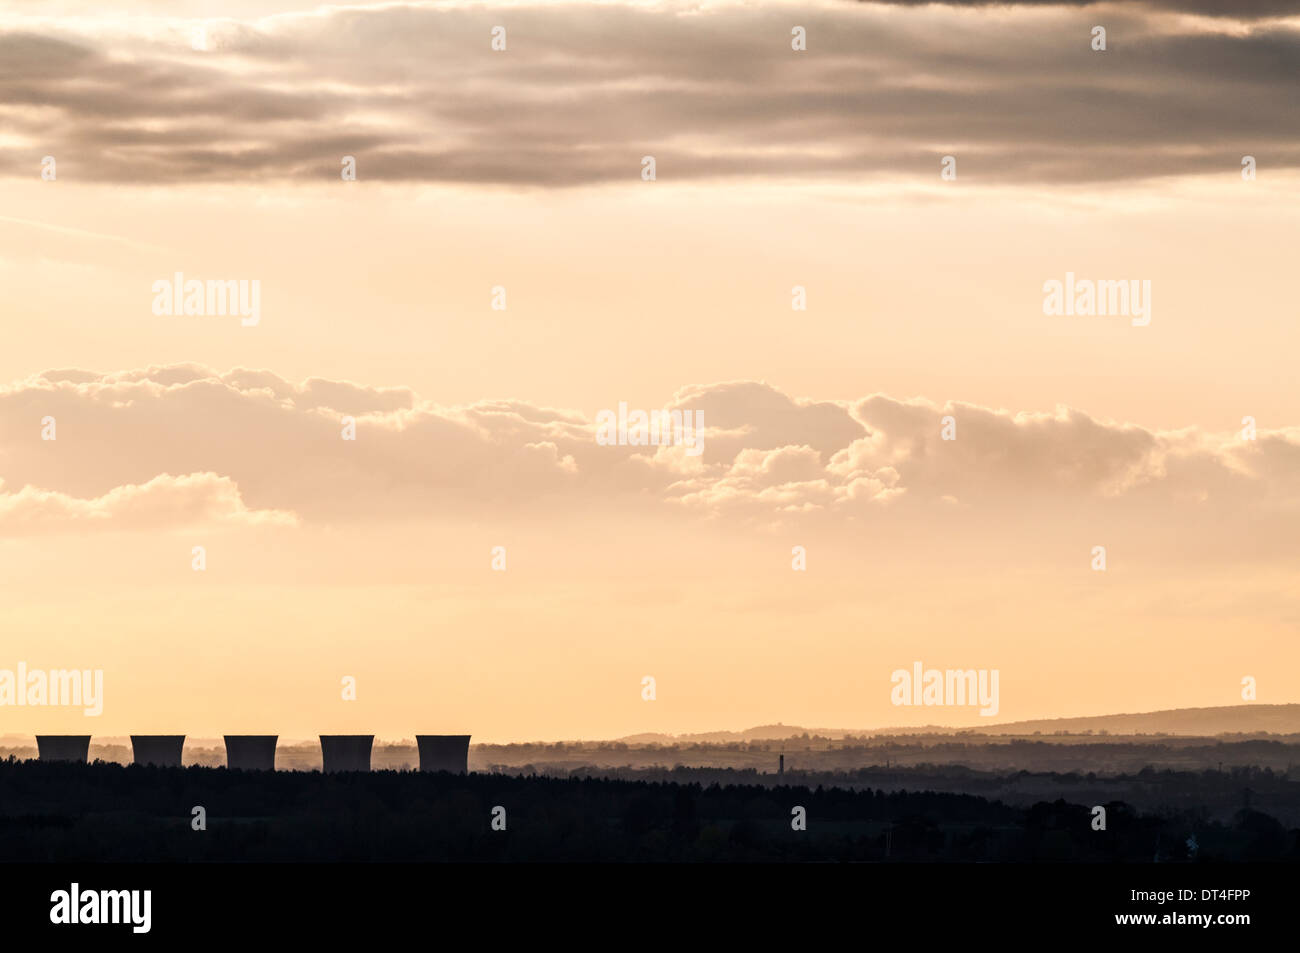 Skyscape de luz del atardecer en el borde del distrito de los picos con 5 torres de refrigeración central eléctrica en desuso en primer plano. Foto de stock